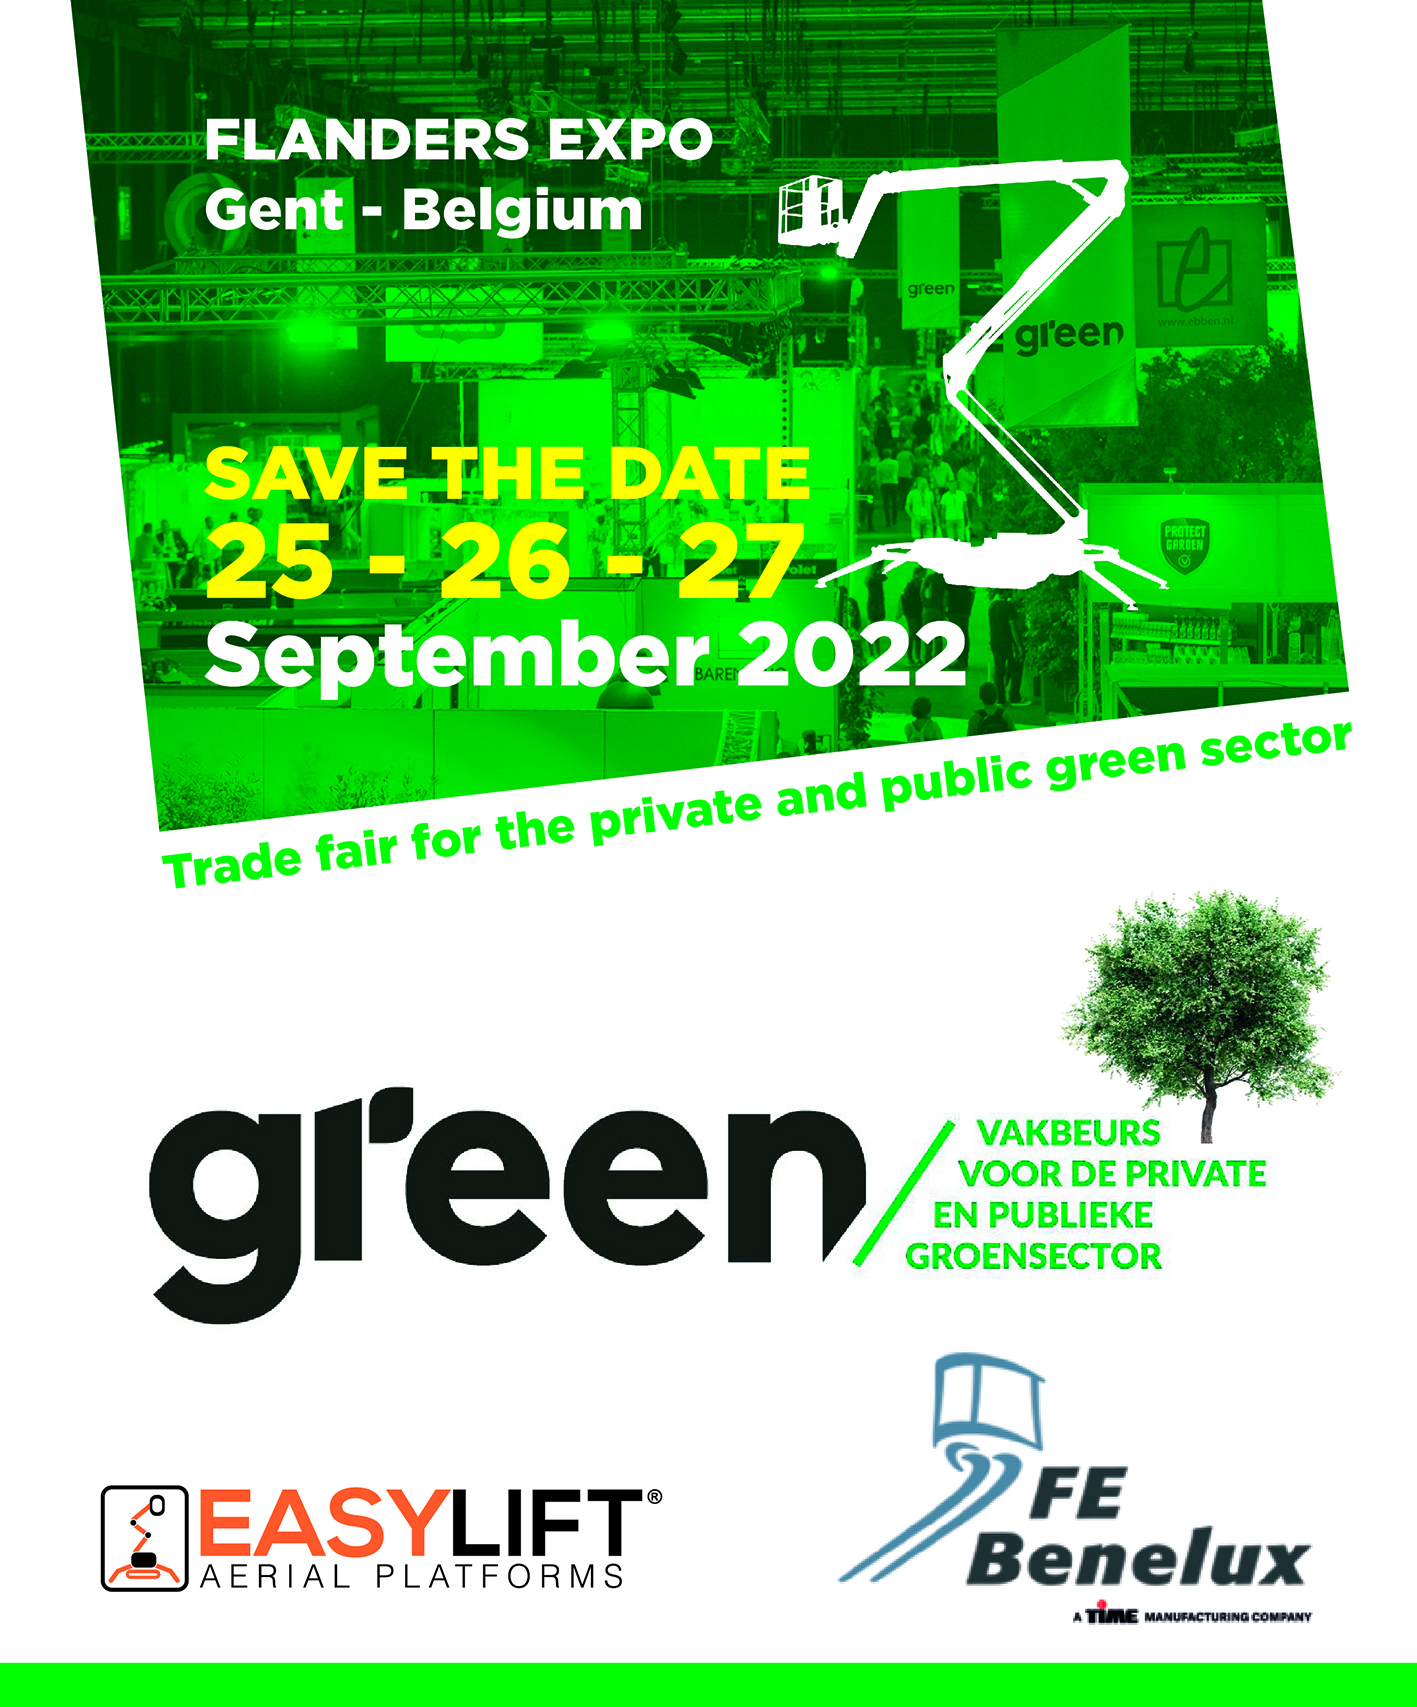 France Elevateur Bénélux auf der Messe Green Expo 2022